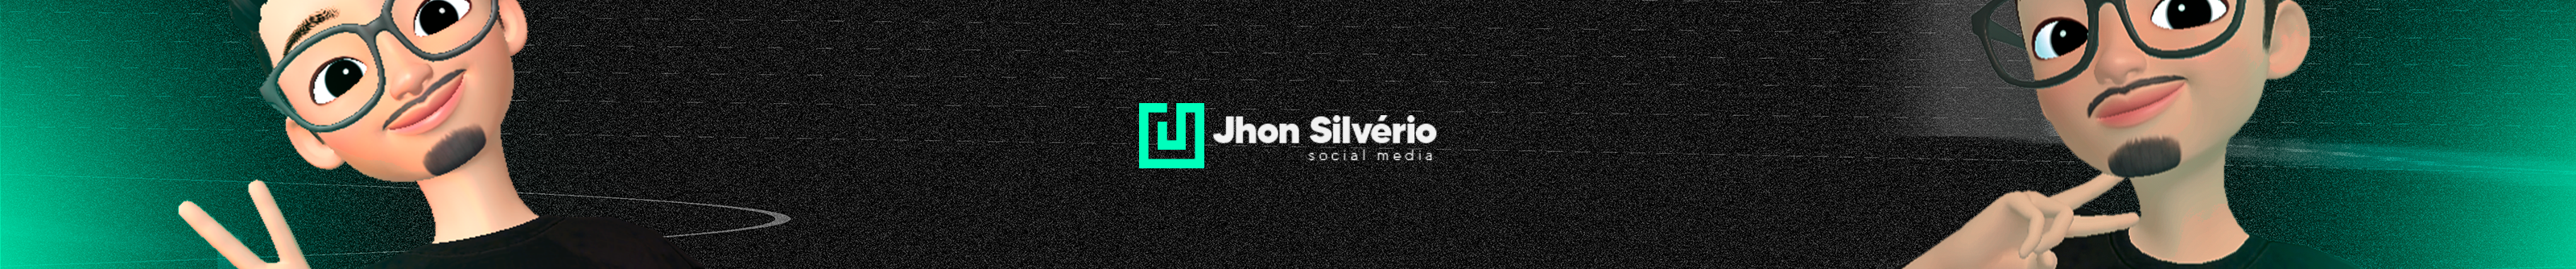 Profil-Banner von Jhon Silvério